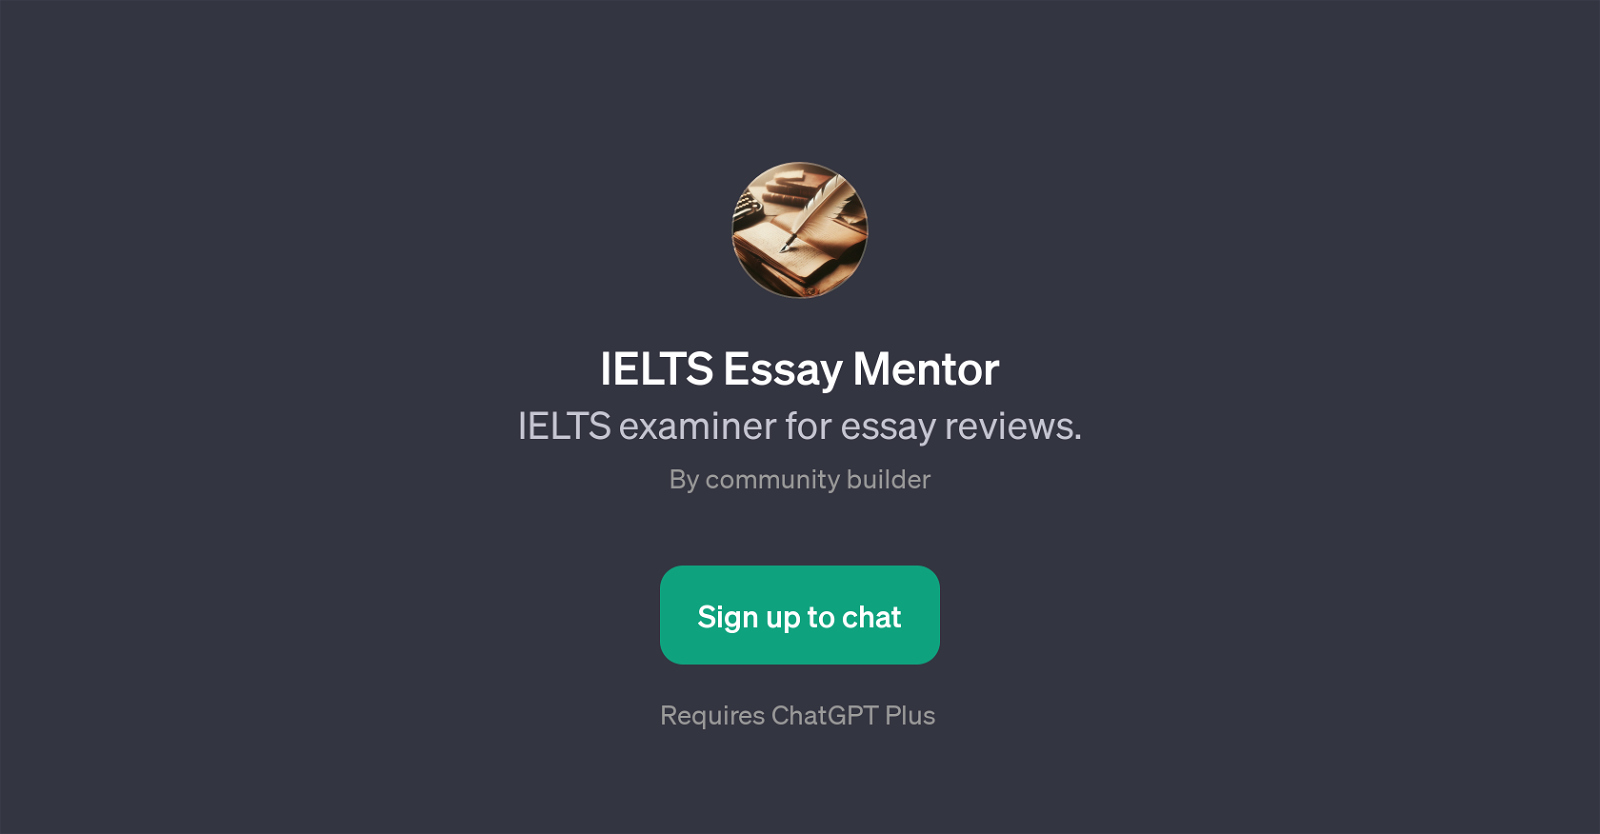 IELTS Essay Mentor website